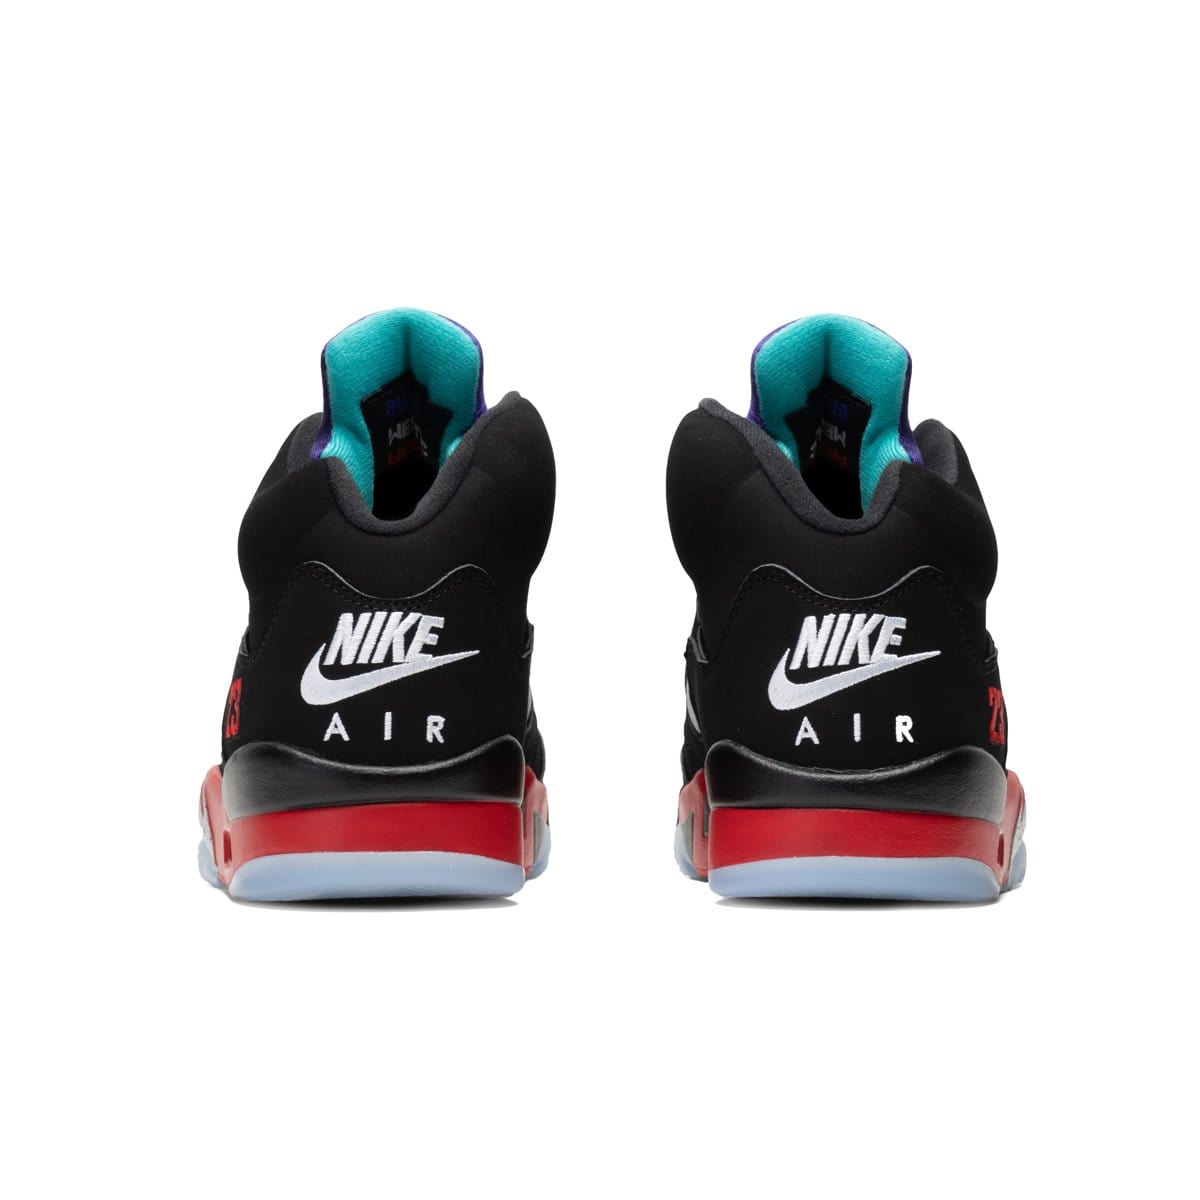 Air Jordan Shoes AIR JORDAN 5 RETRO